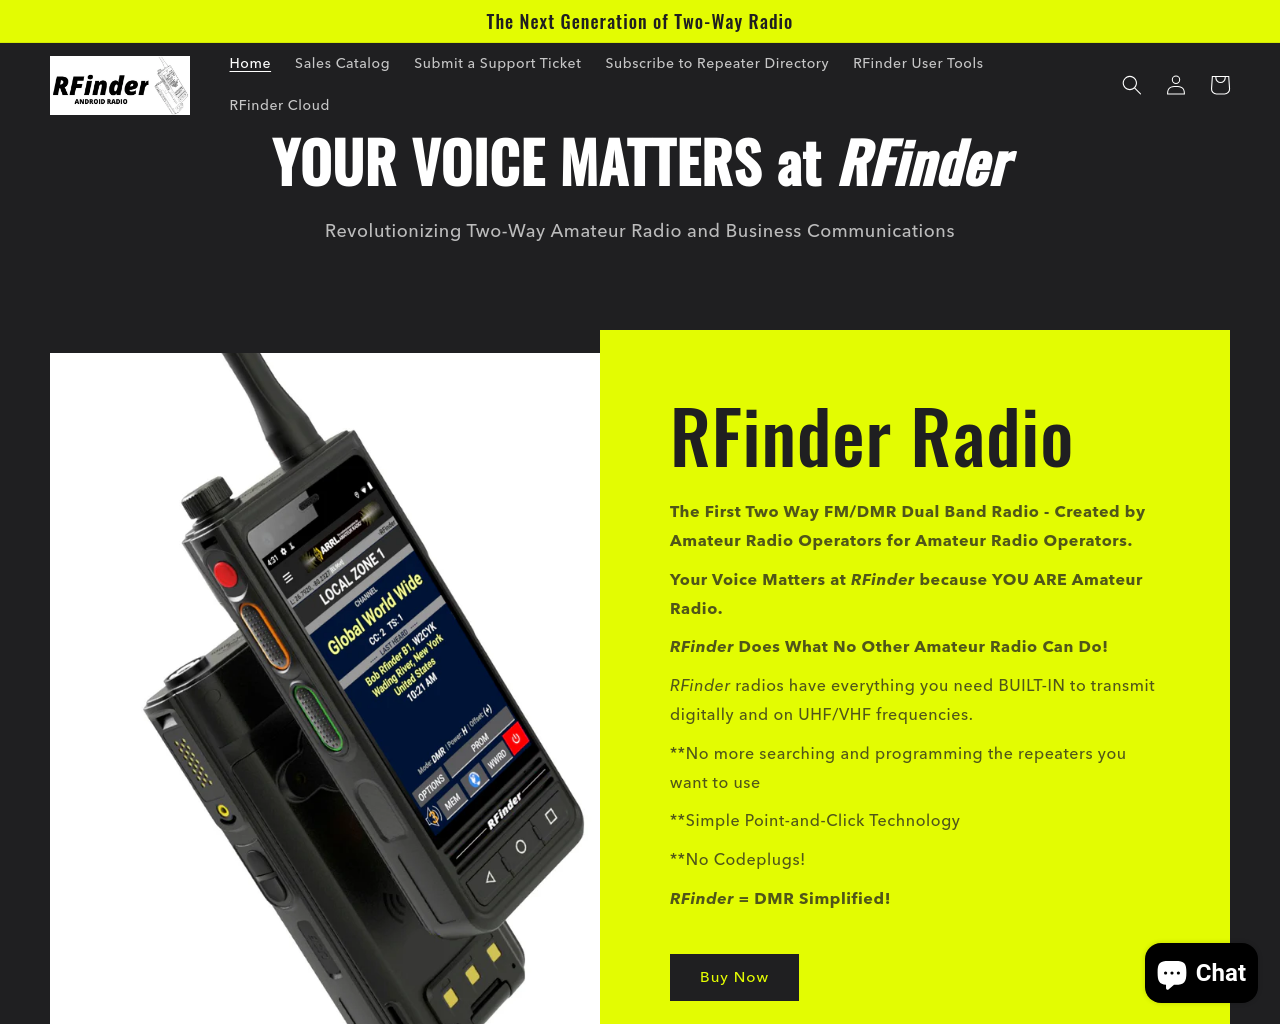 rfinder.net